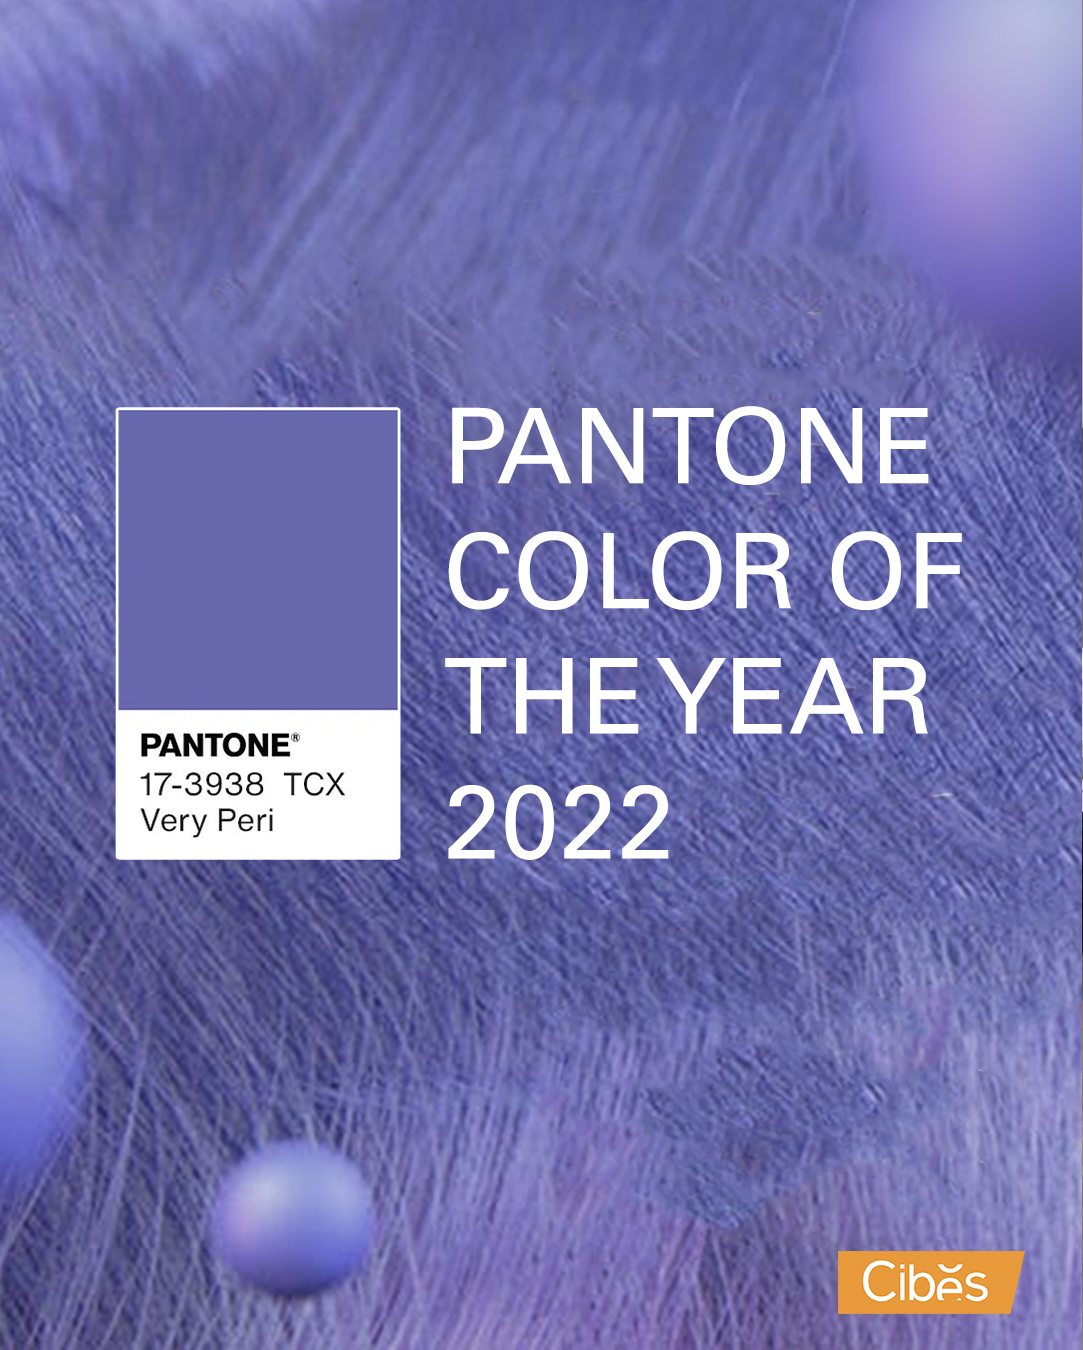 Pilihan Warna pada Lift - Pantone Color of The Year 2022